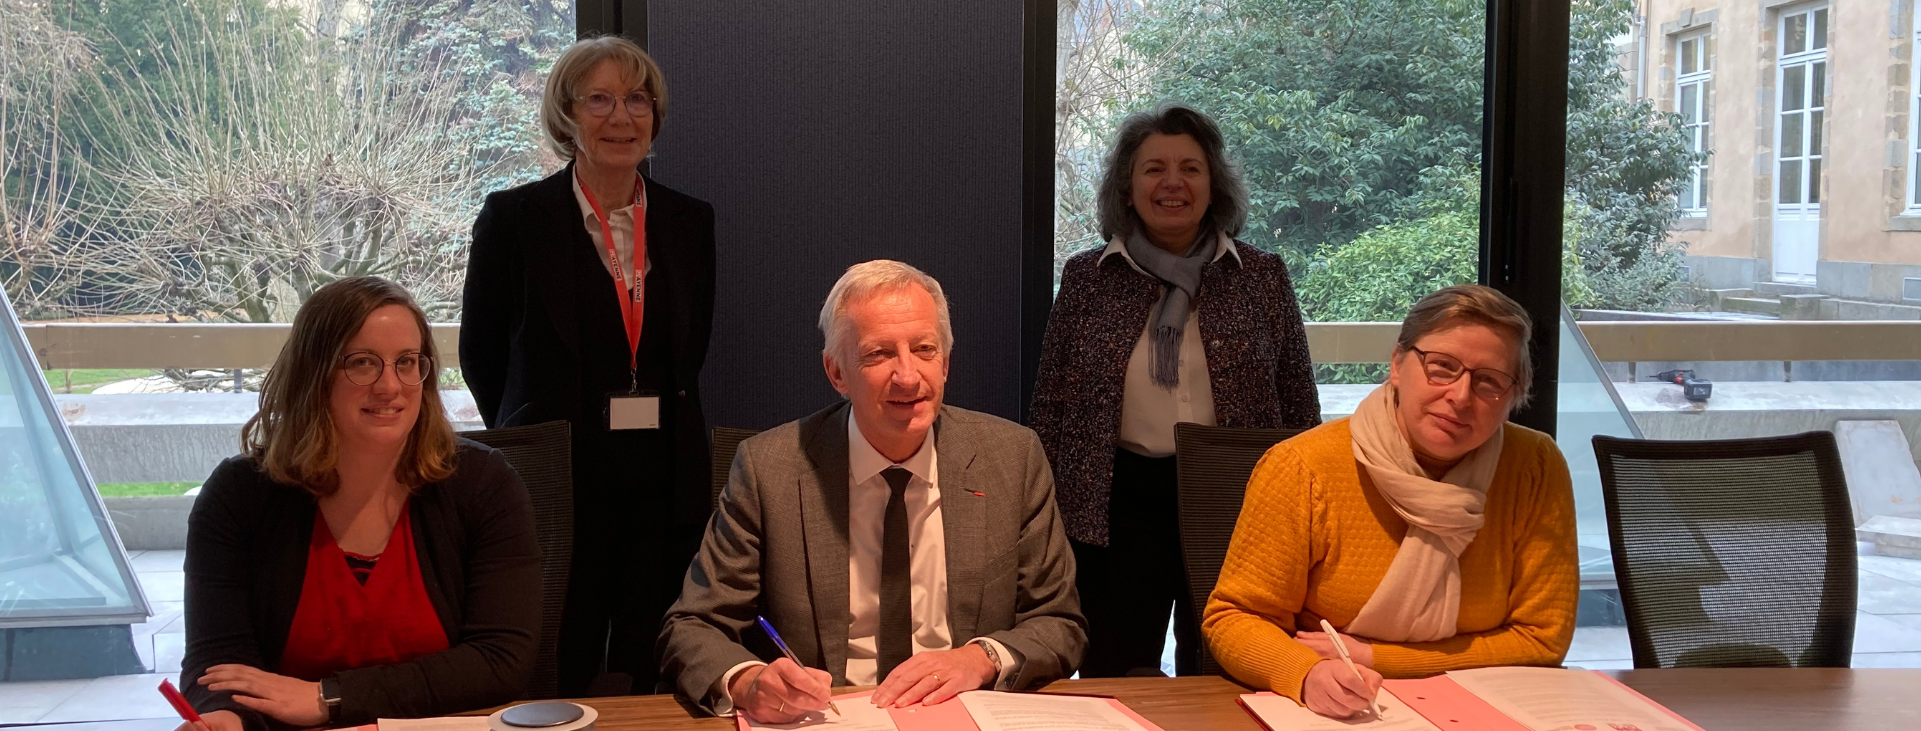 Le Conseil départemental de la Mayenne signe un protocole d’accord avec les représentants du personnel afin de mettre en œuvre ses engagements en matière de ressources humaines